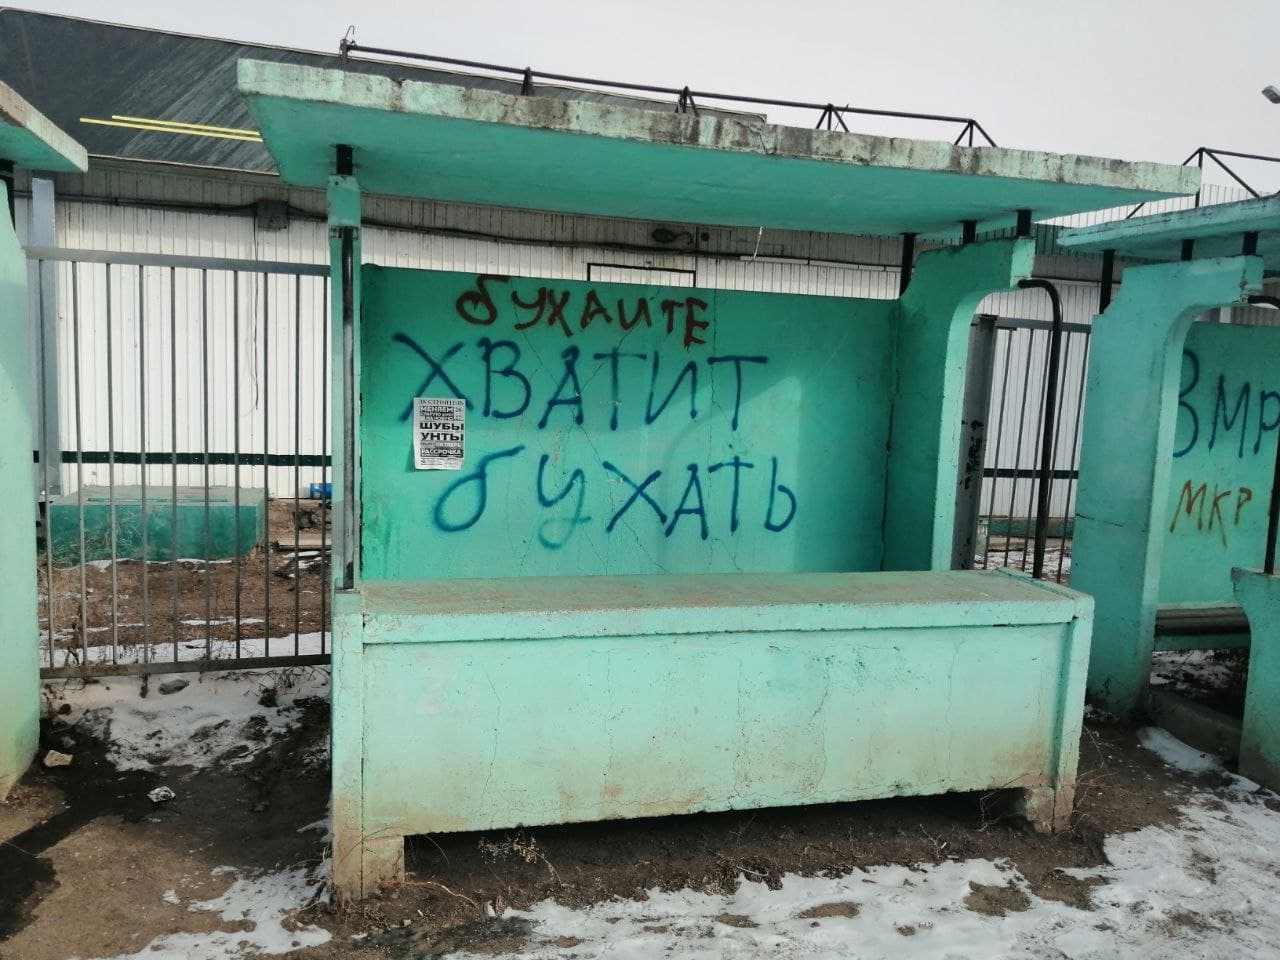 Боремся с алкоголизмом кто как может. Фото из Краснокаменска, где сейчас работает репортерская группа "Вечорки". 3 марта.